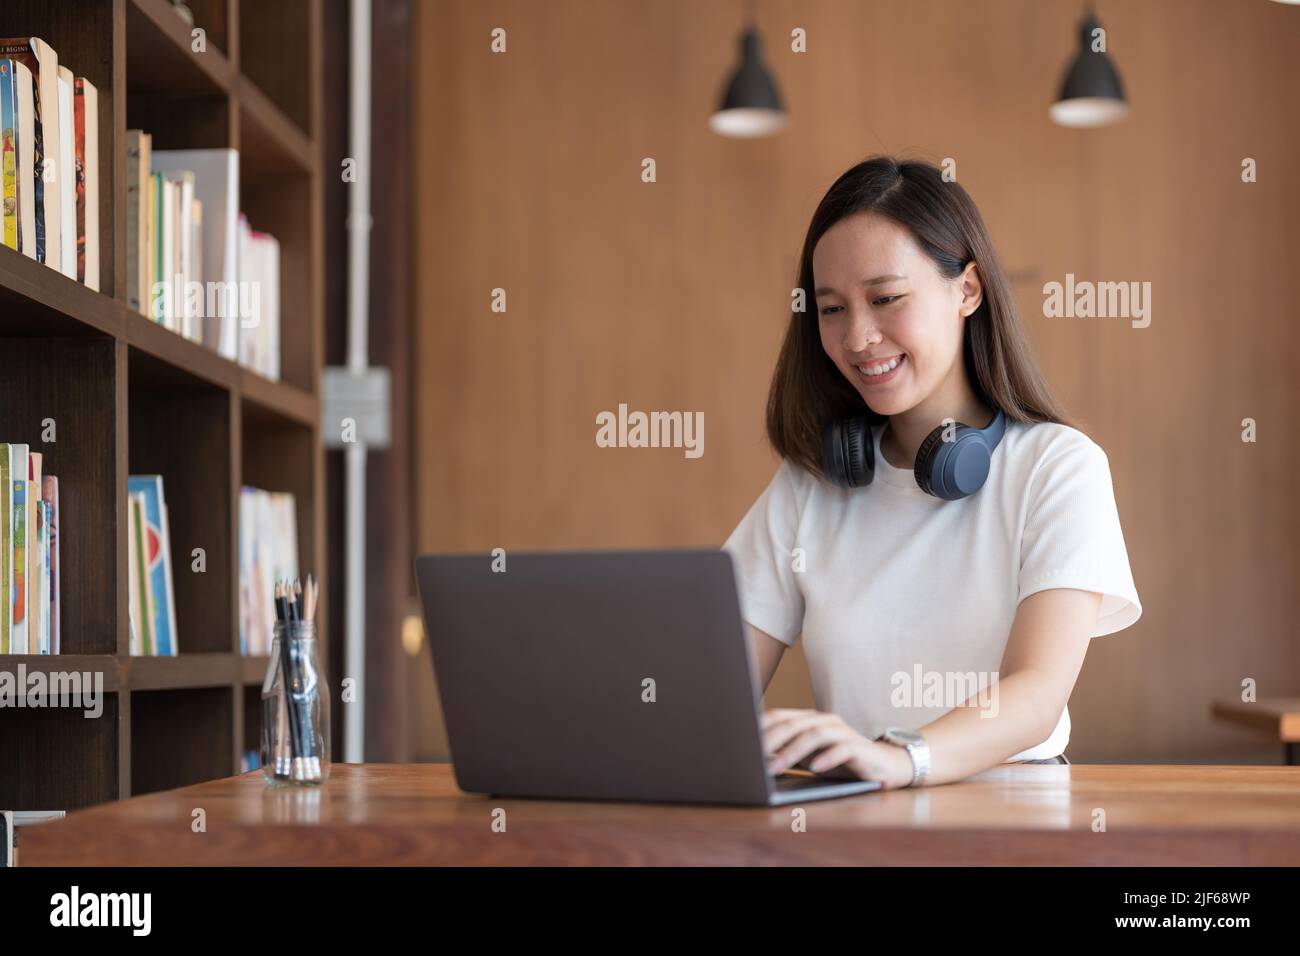 Portrait de jeune femme asiatique freelance de main travaille son travail sur ordinateur portable. Effectuer une analyse comptable pour rapporter les données d'investissement immobilier Banque D'Images